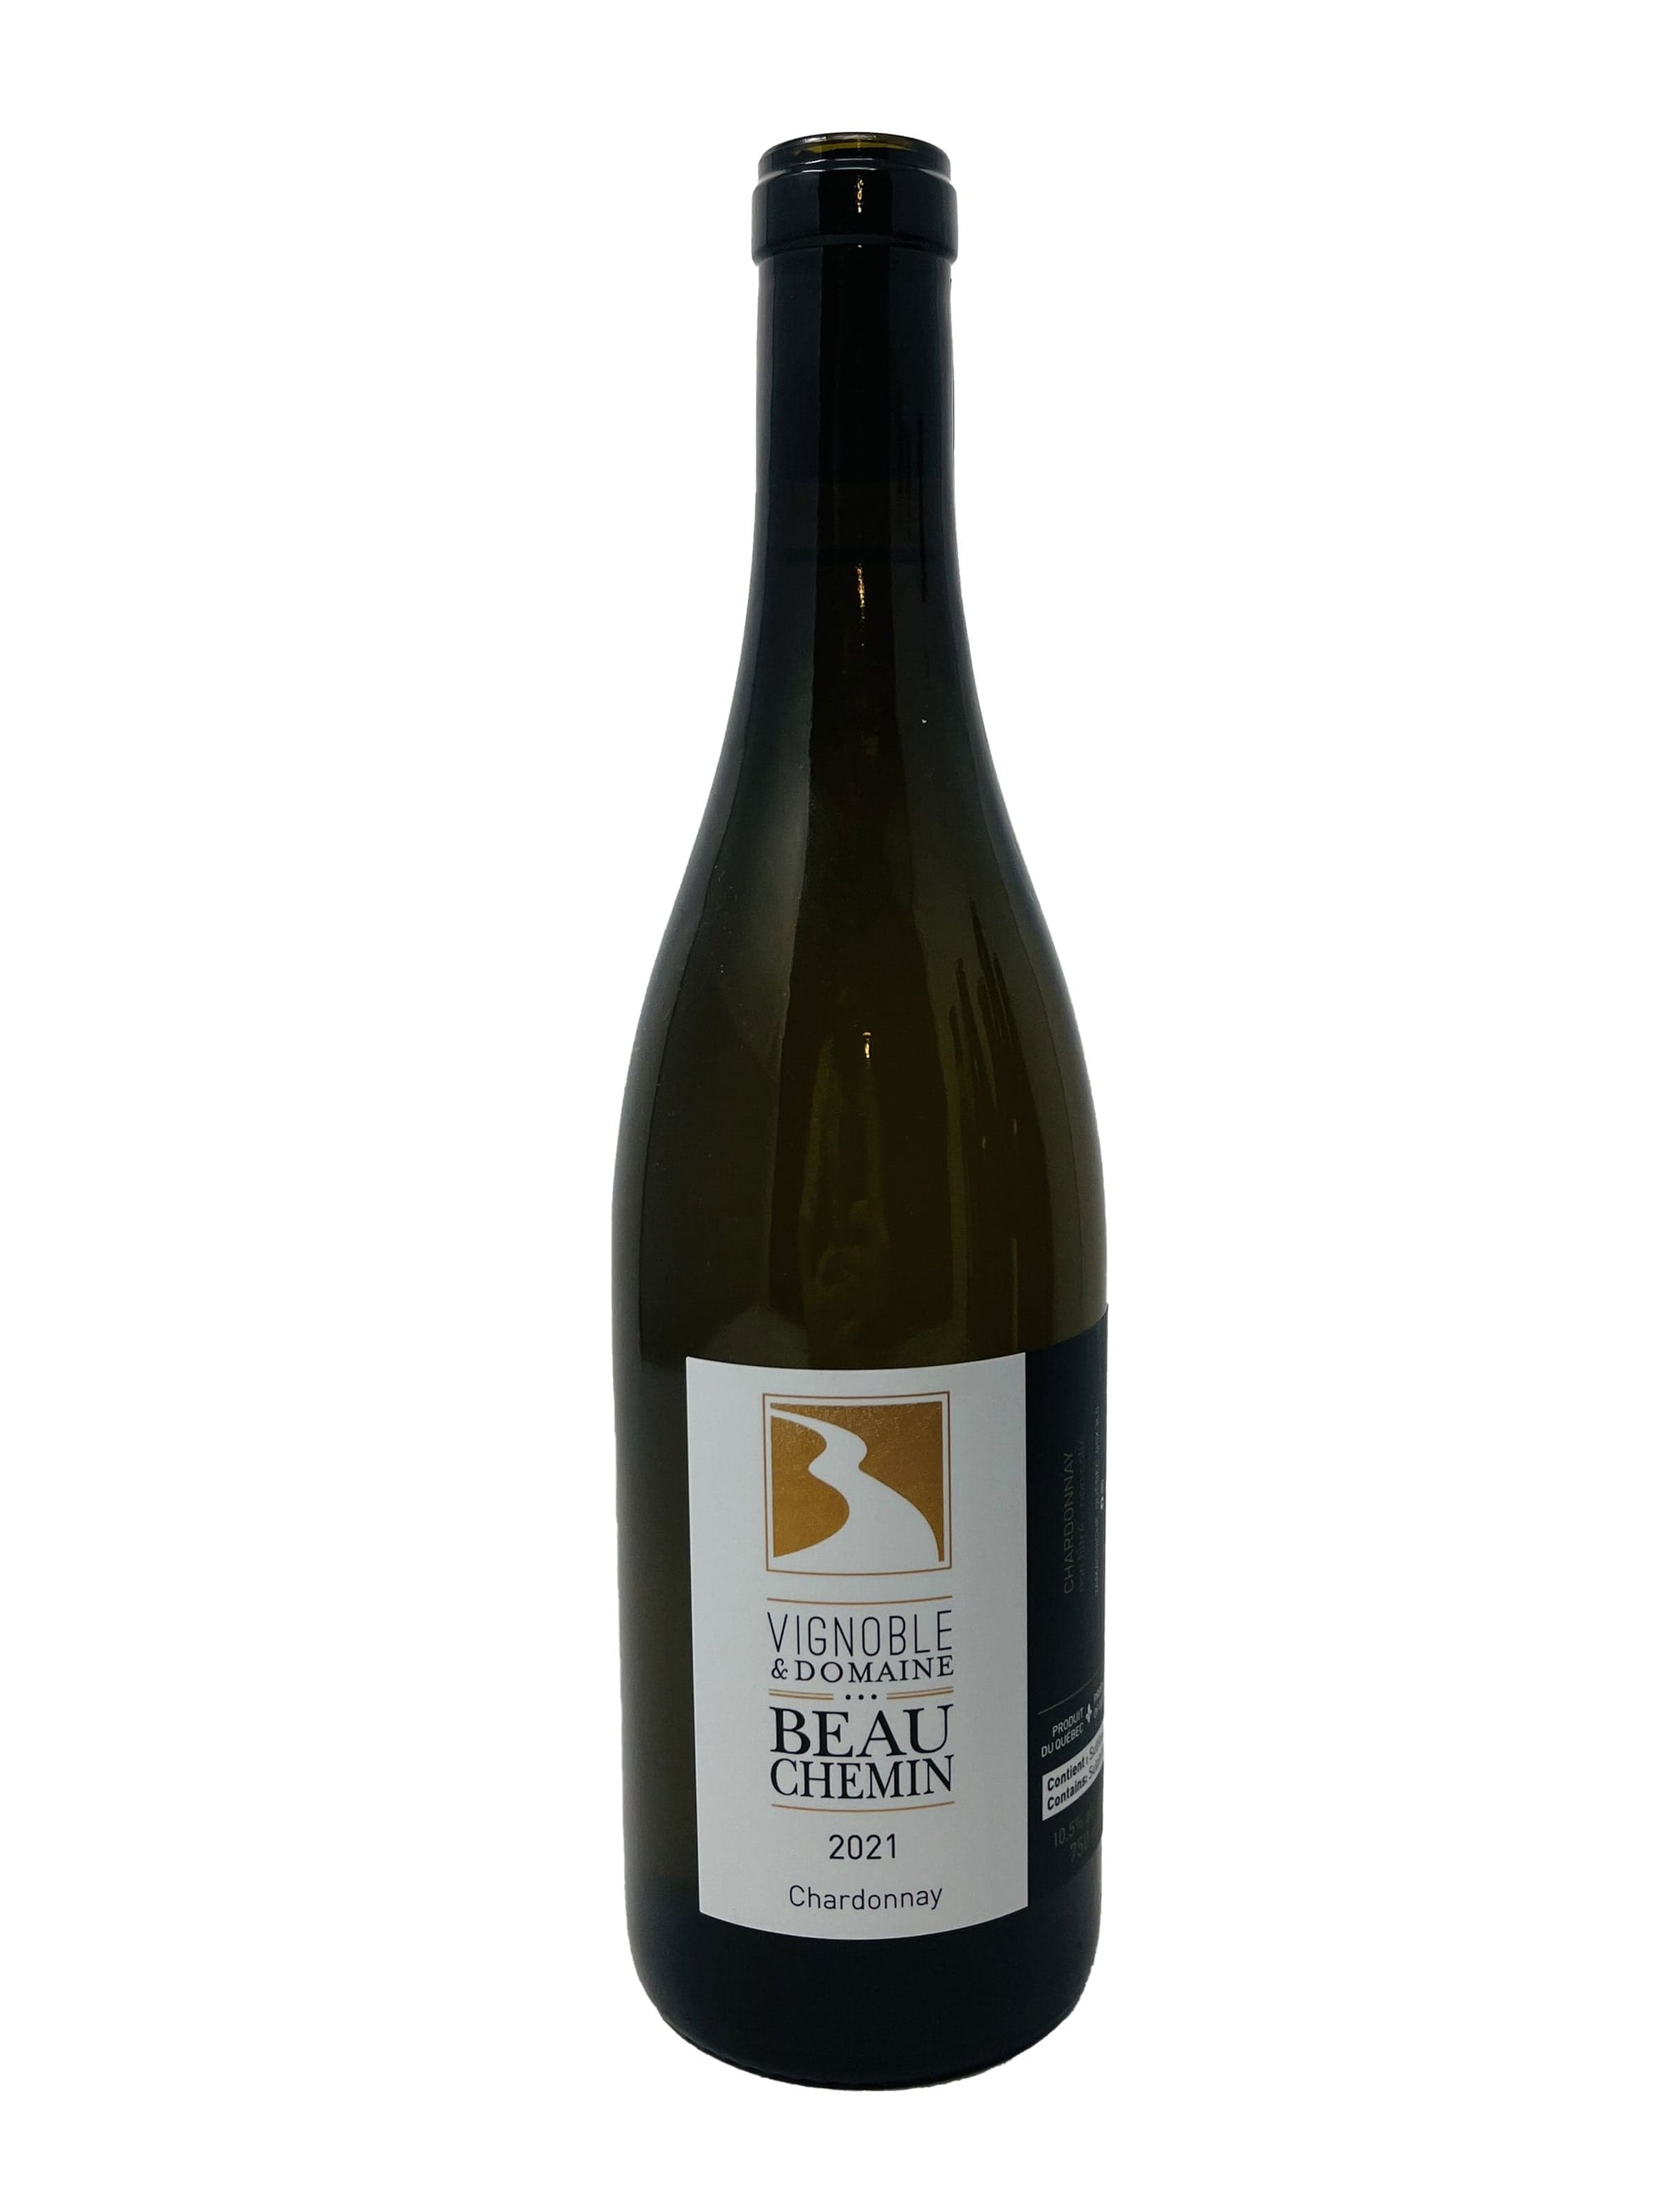 Vignoble et Domaine Beauchemin vin Beauchemin Chardonnay 2021 - Vin blanc du Vignoble et Domaine Beauchemin